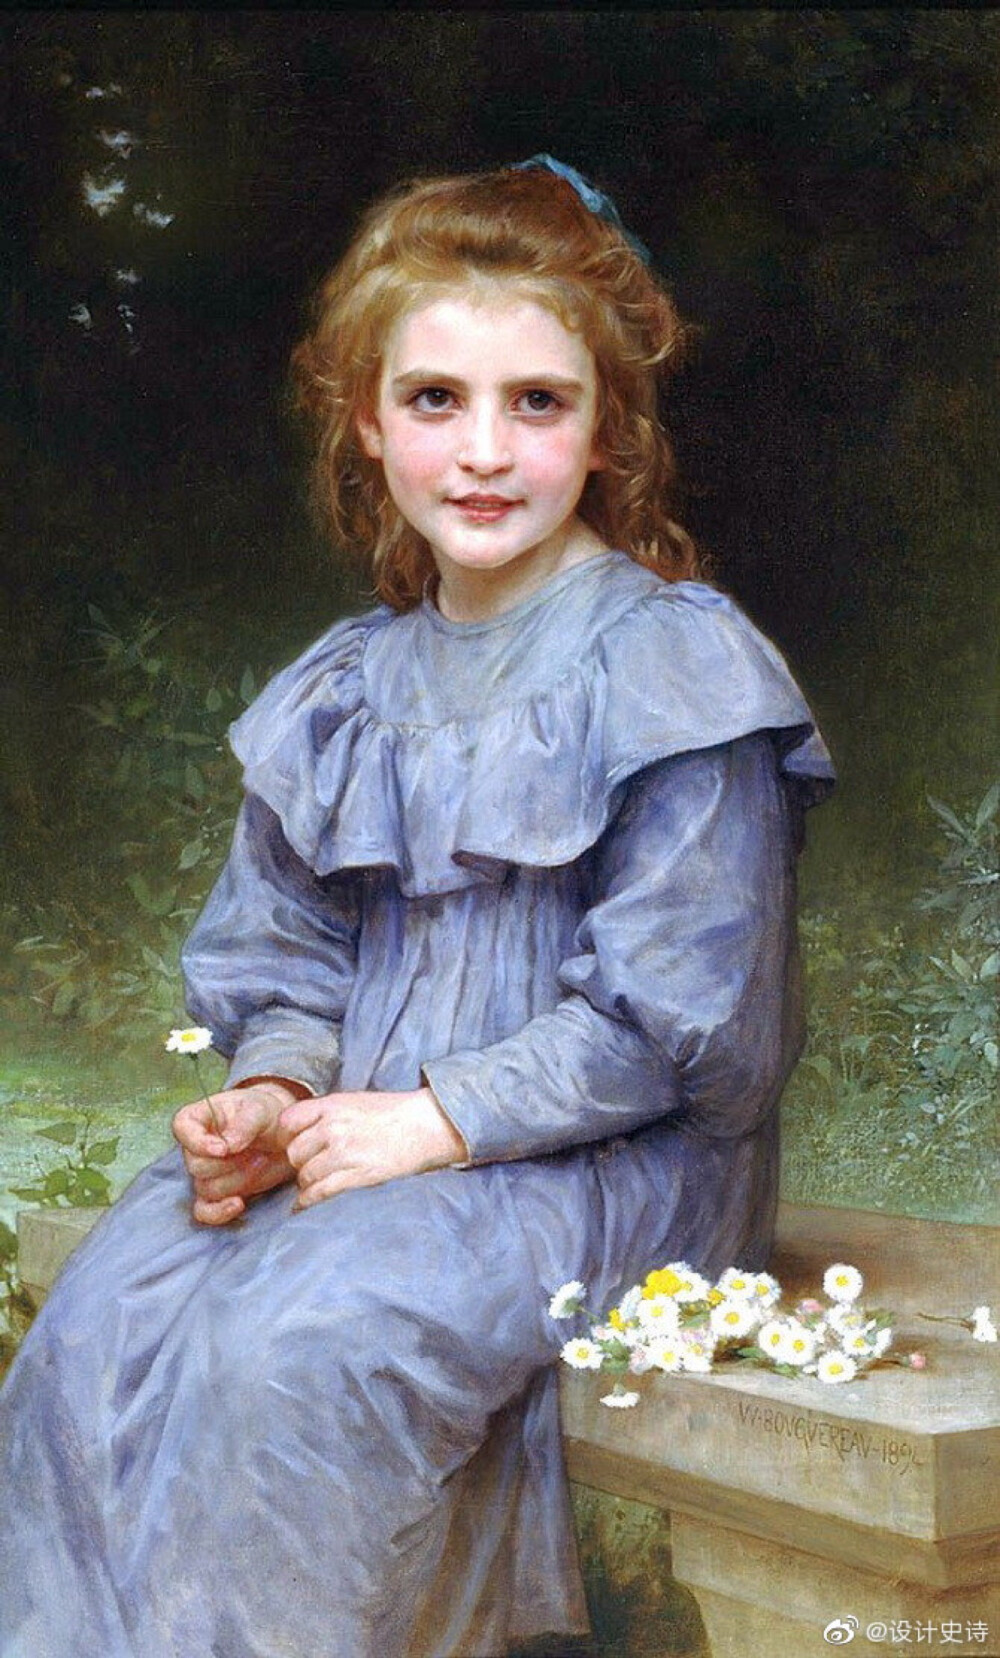 威廉·阿道夫·布格罗（William Adolphe Bouguereau，1825年11月30日 - 1905年8月19日），是19世纪末的法国学院派画家。布格罗的绘画常用神话作为灵感，以19世纪的现实主义绘画技巧来诠释古典主义的题材，并且经常以女性的躯体作为描绘对象。布格罗在世时于法国和美国都享有高度的名声，并且在一生中获得众多的荣誉，同时他的作品在当时也都以超高价卖出。作为那个时代沙龙画家中的佼佼者，布格罗成为后来崛起的印象派等前卫艺术的首要攻击对象[2]，并且在20世纪由于现代主义的崛起而被遗忘。到了1980年代，对于人物画和19世纪画风的兴趣重新崛起，布格罗的绘画才又开始被重视[2]，并且被认为是学院派艺术最重要的画家之一。在他一生中，布格罗总共画了822幅当下已知的画，除此之外还有其他许多作品的下落不明。